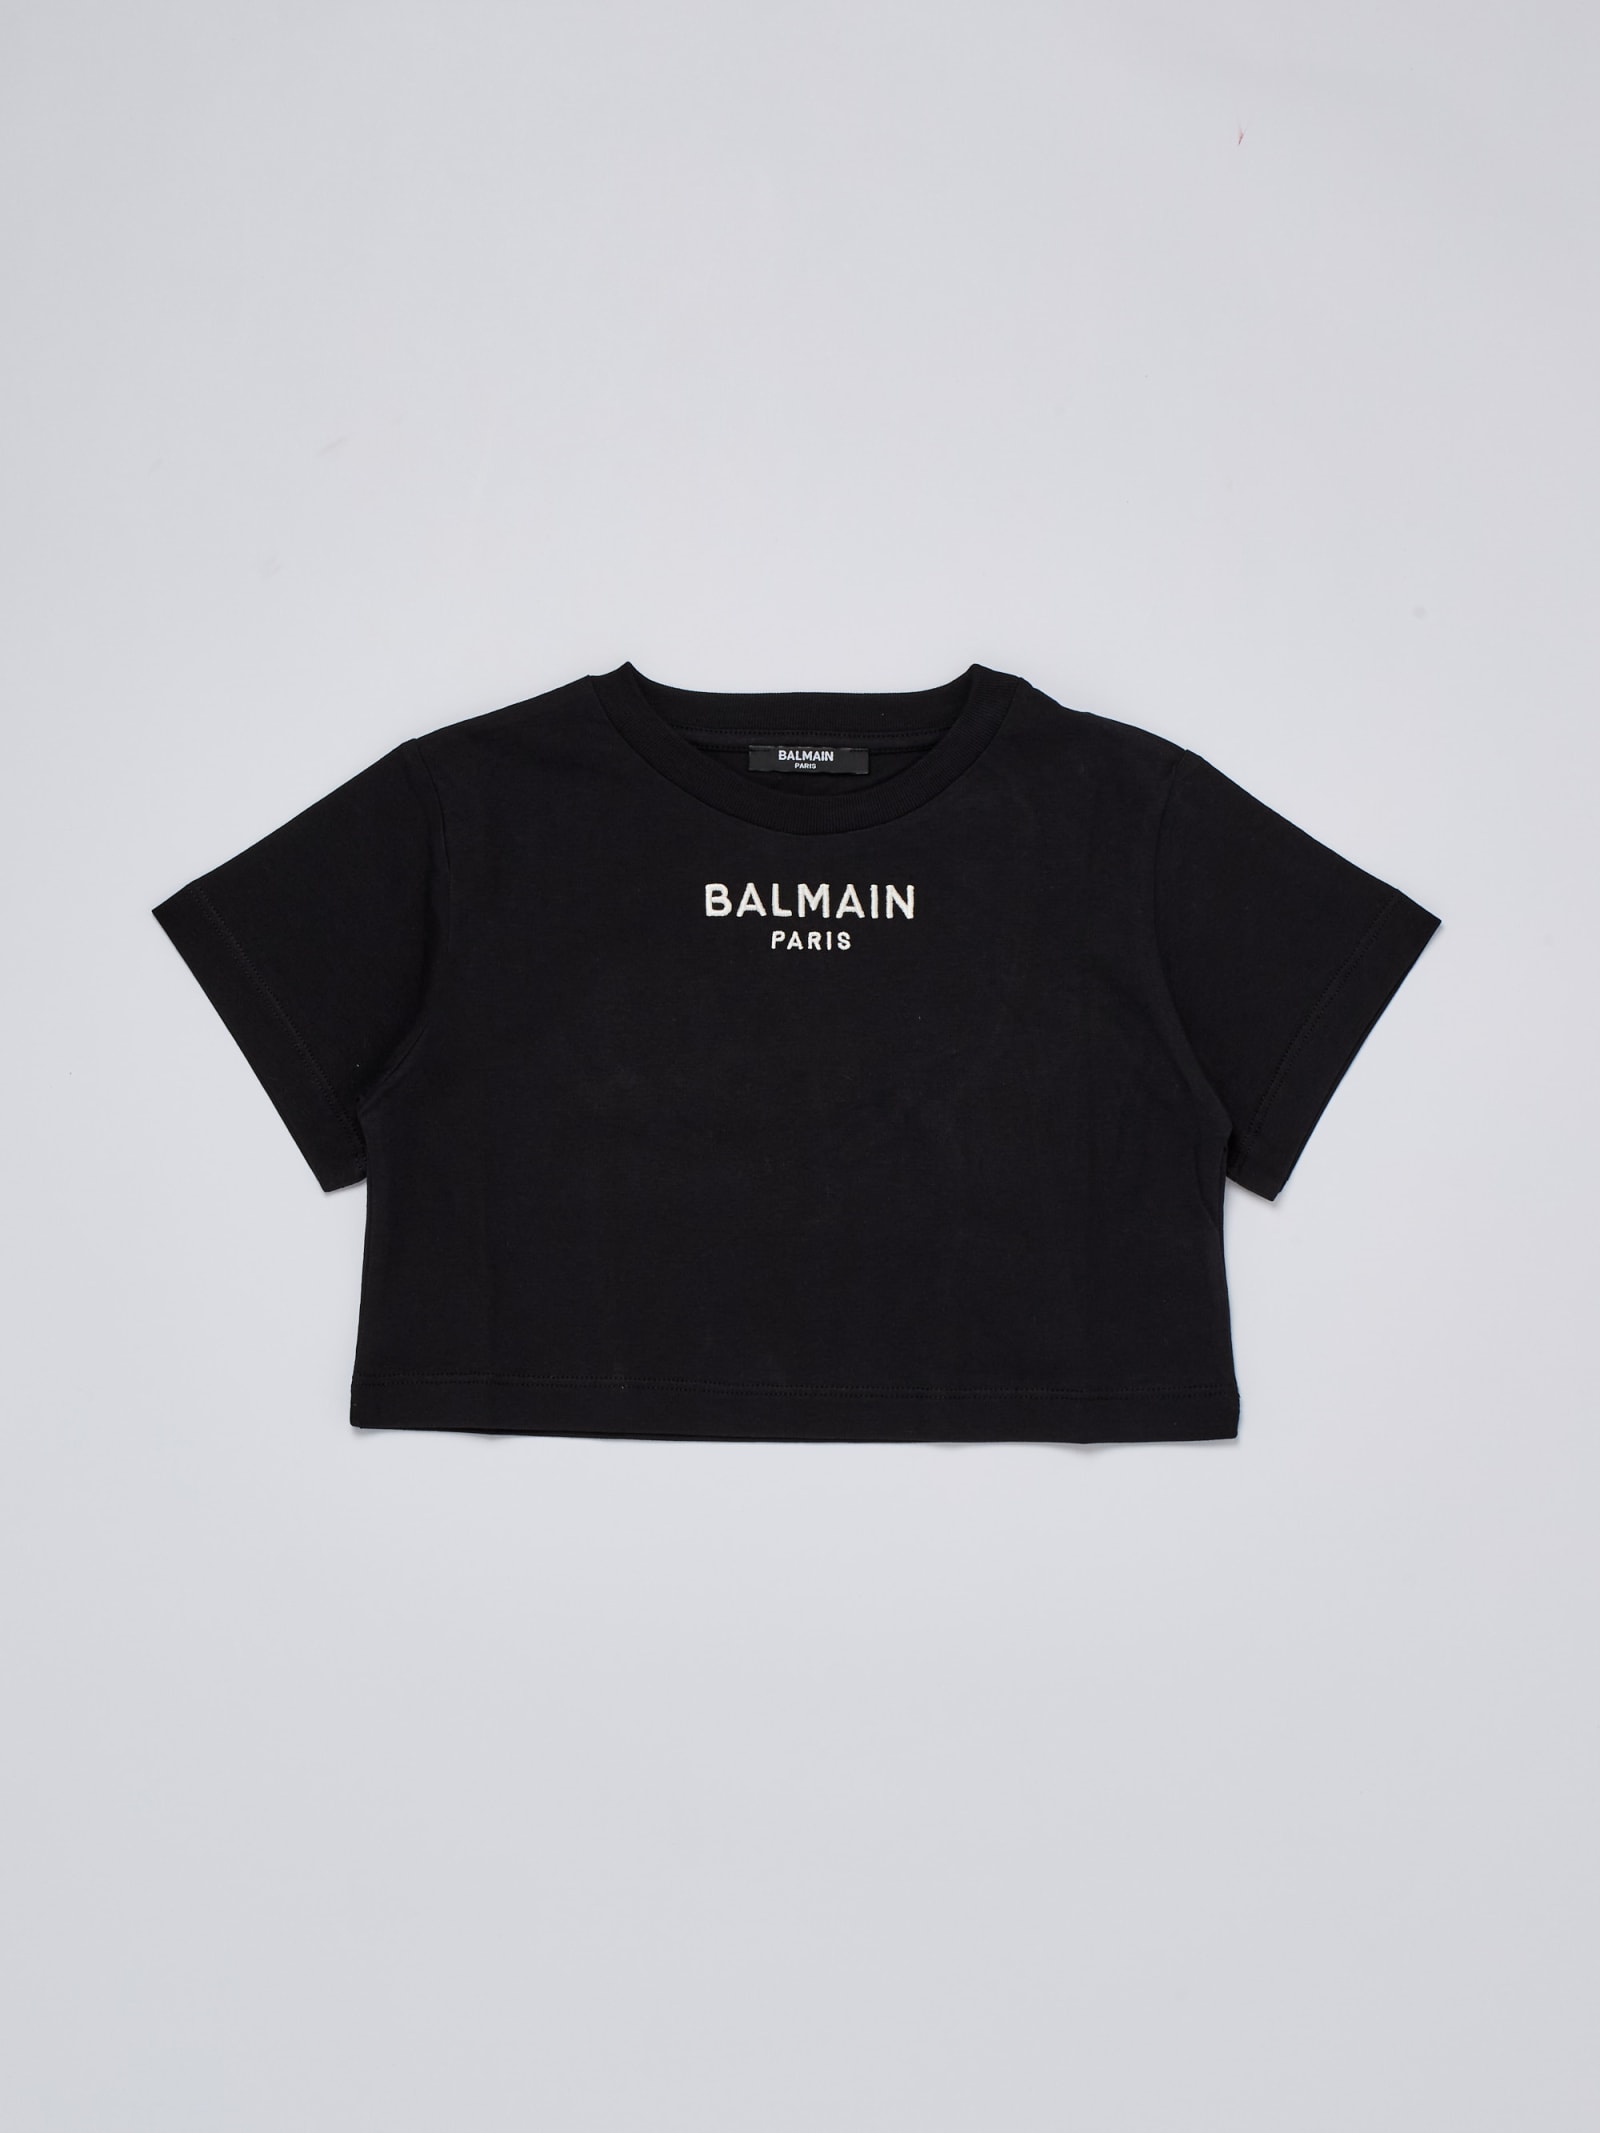 Balmain Kids' T-shirt T-shirt In Nero-bianco